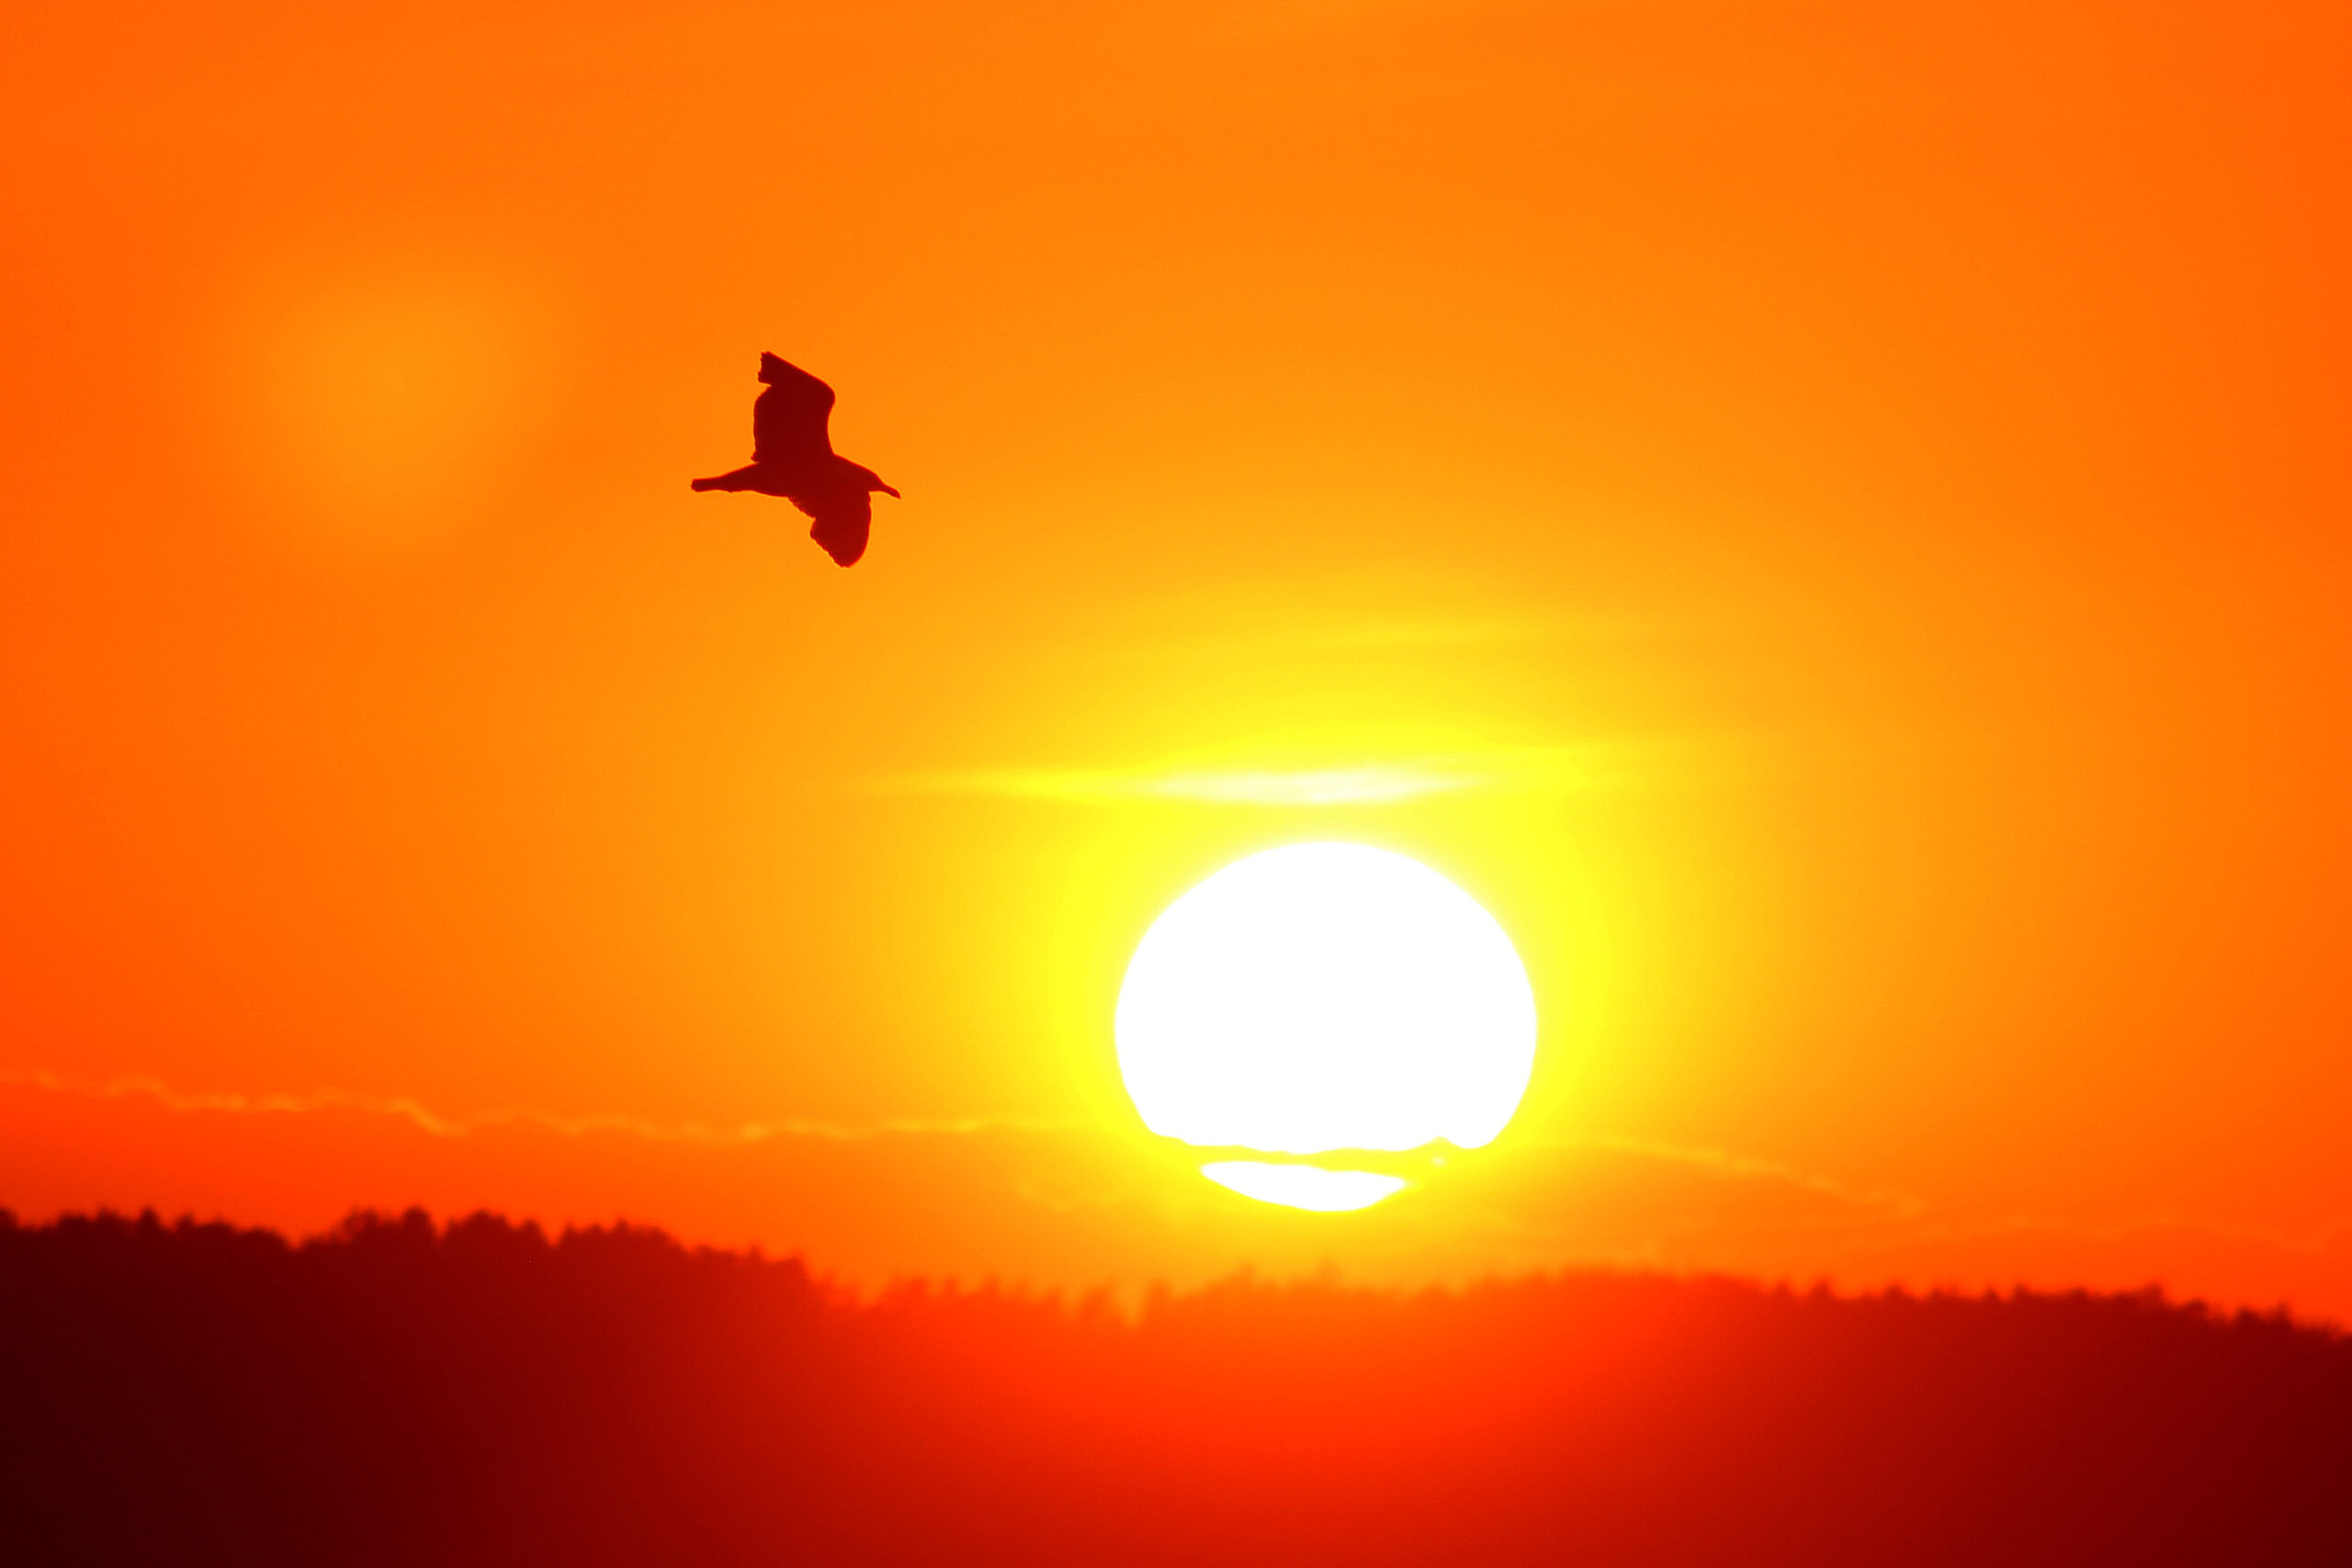 Summer night - a bird flying across a sunset